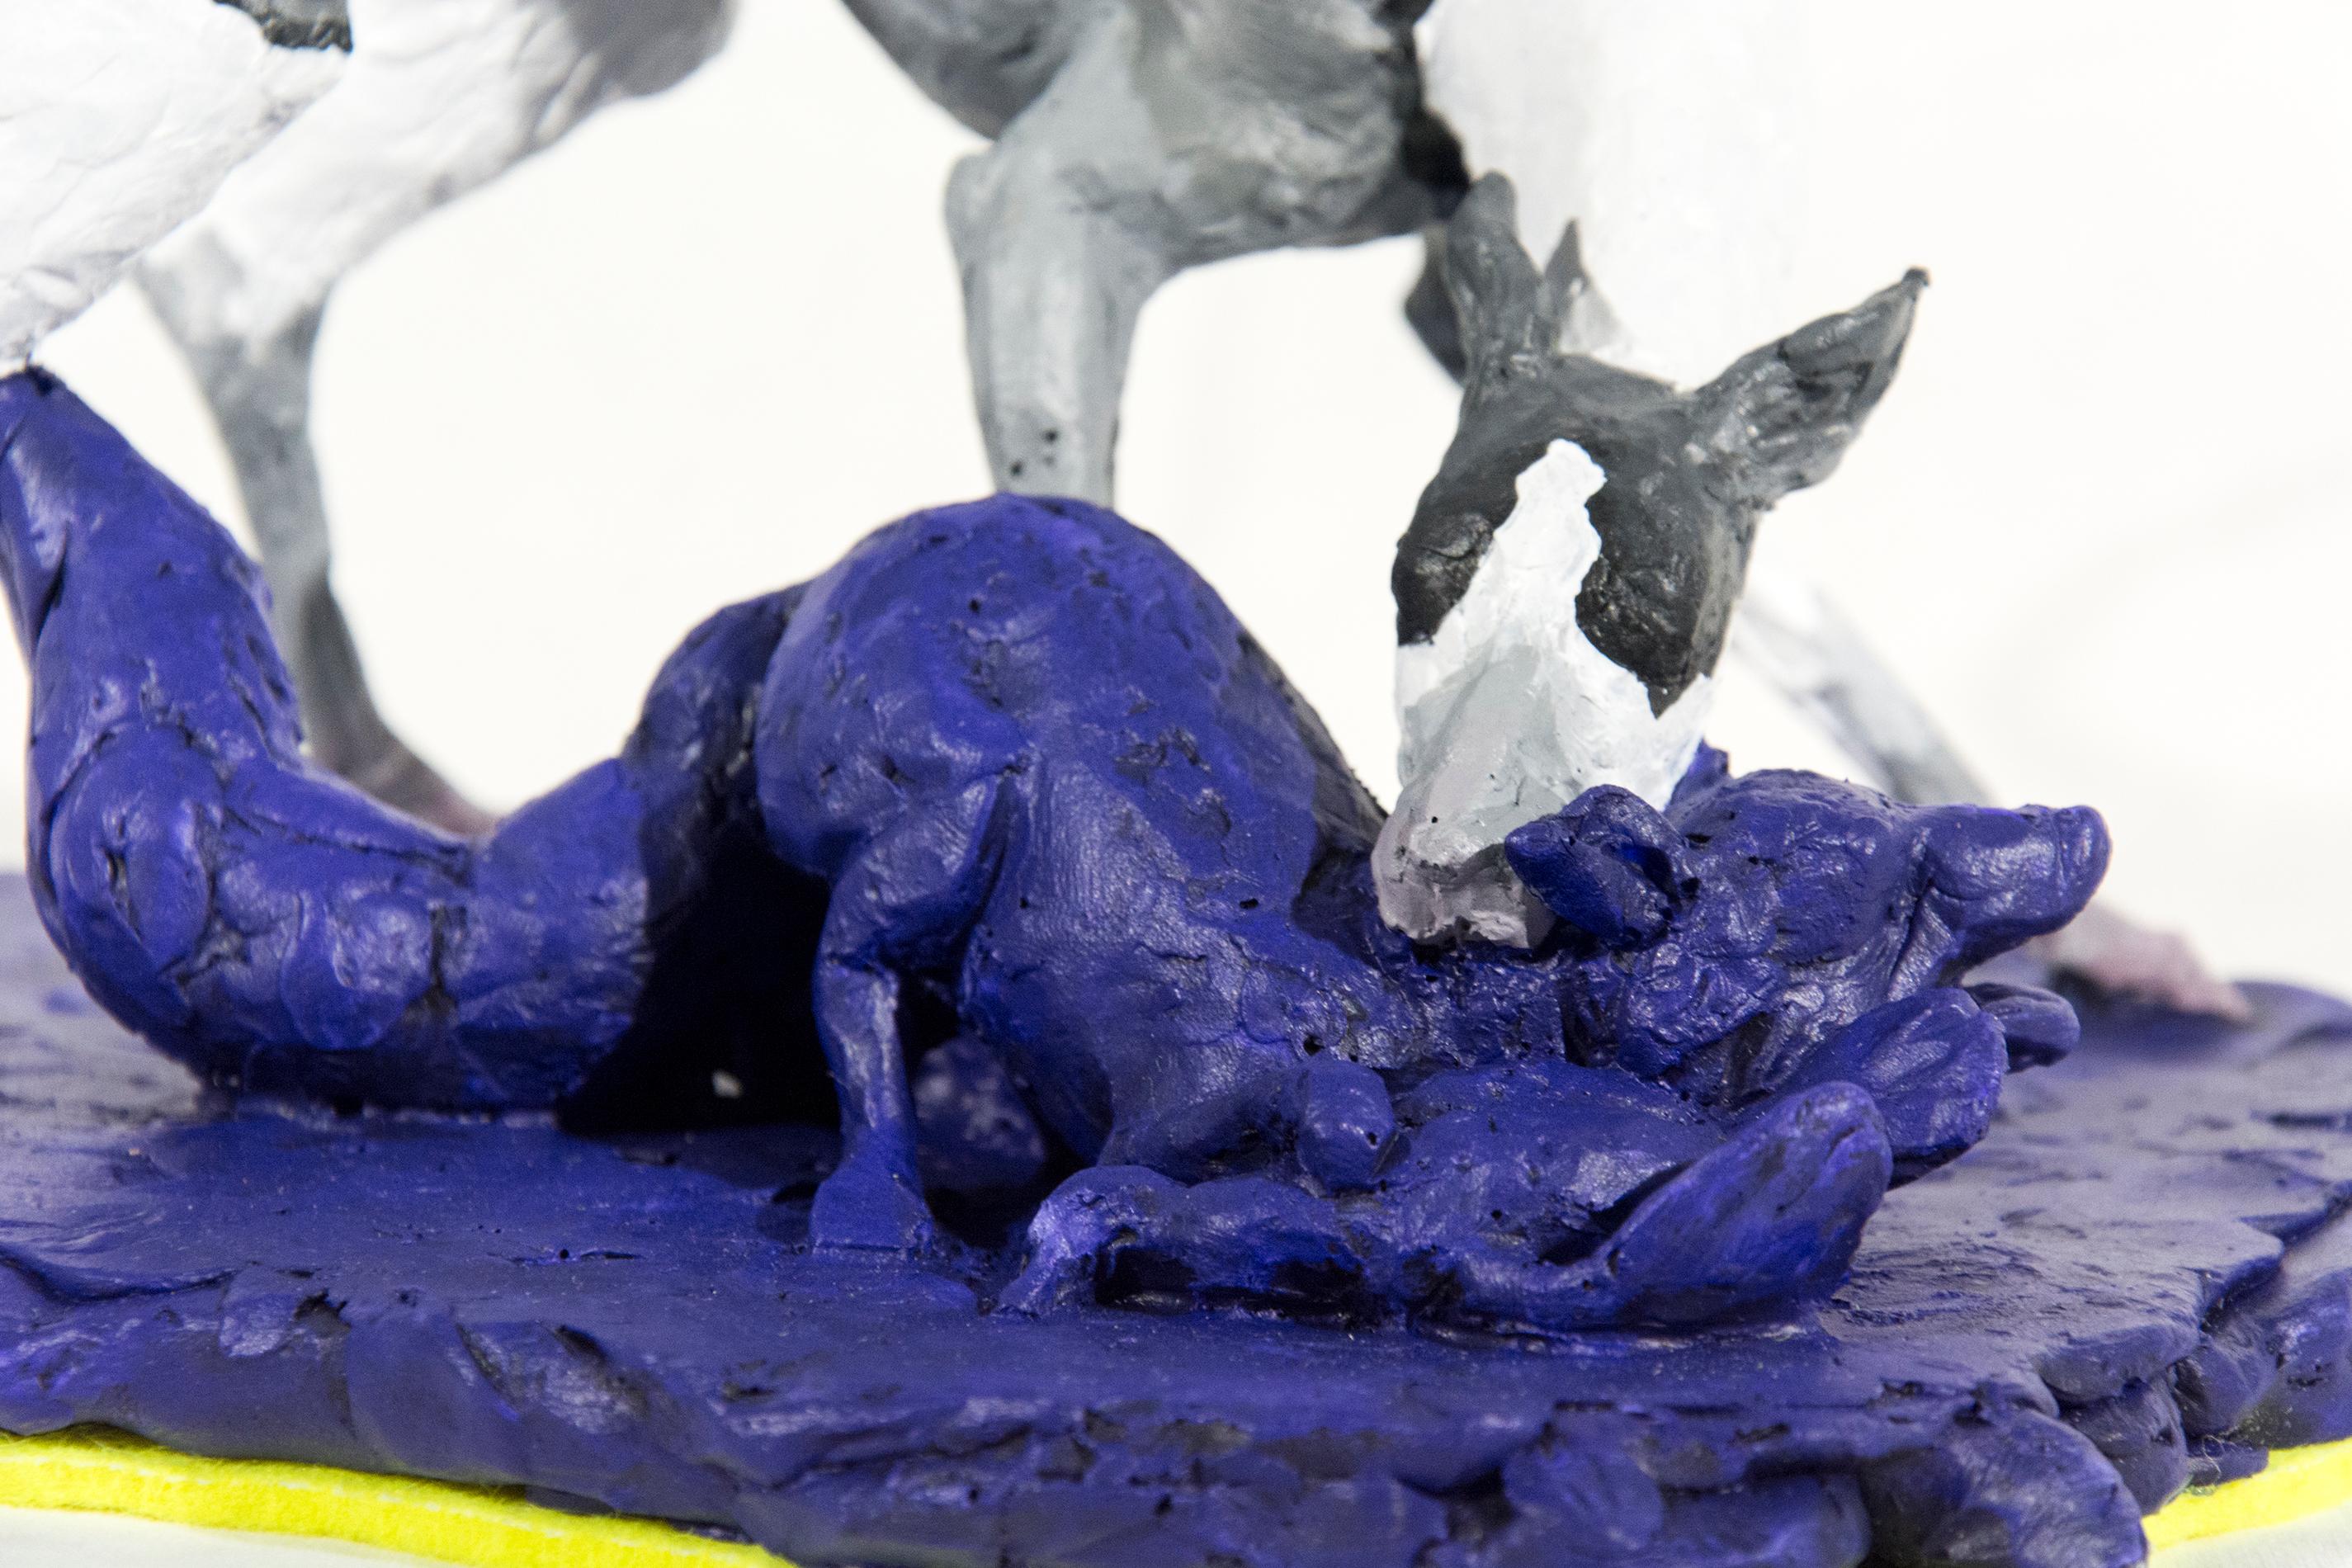 Petit chien lévrier 2/8 - sculpture en résine grise, blanche, bleue, figurative, chien, faune sauvage - Contemporain Sculpture par Nicholas Crombach